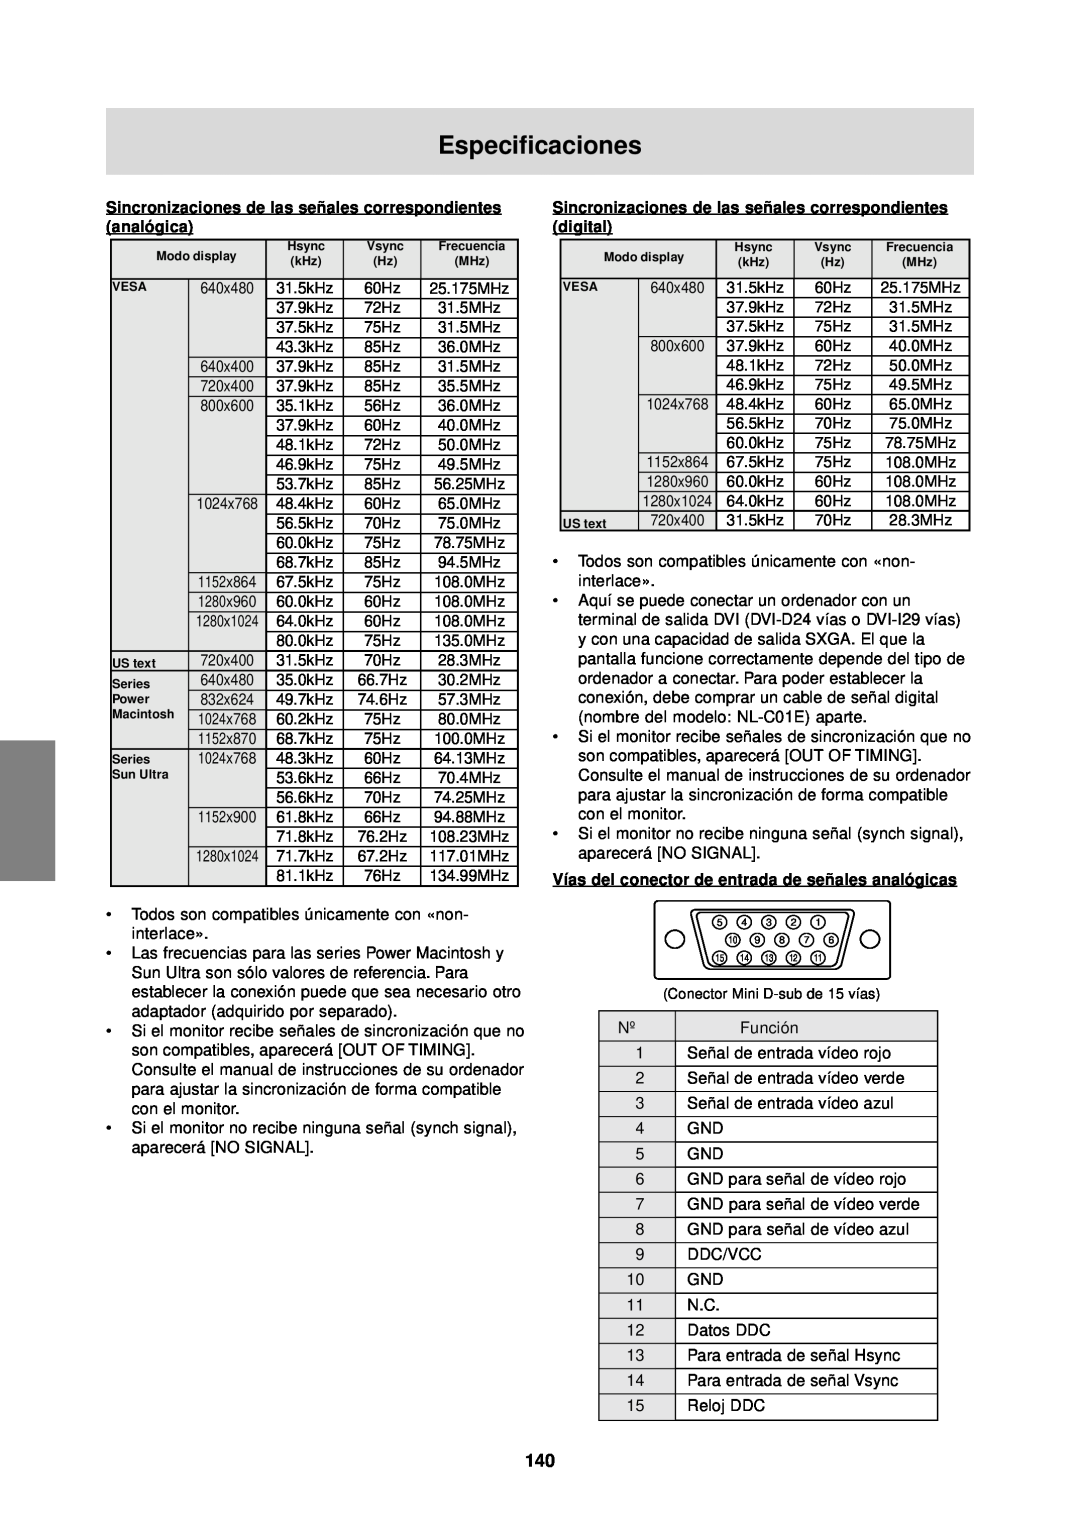 Sharp LL-T1610W operation manual Especificaciones, Sincronizaciones de las señales correspondientes analógica 